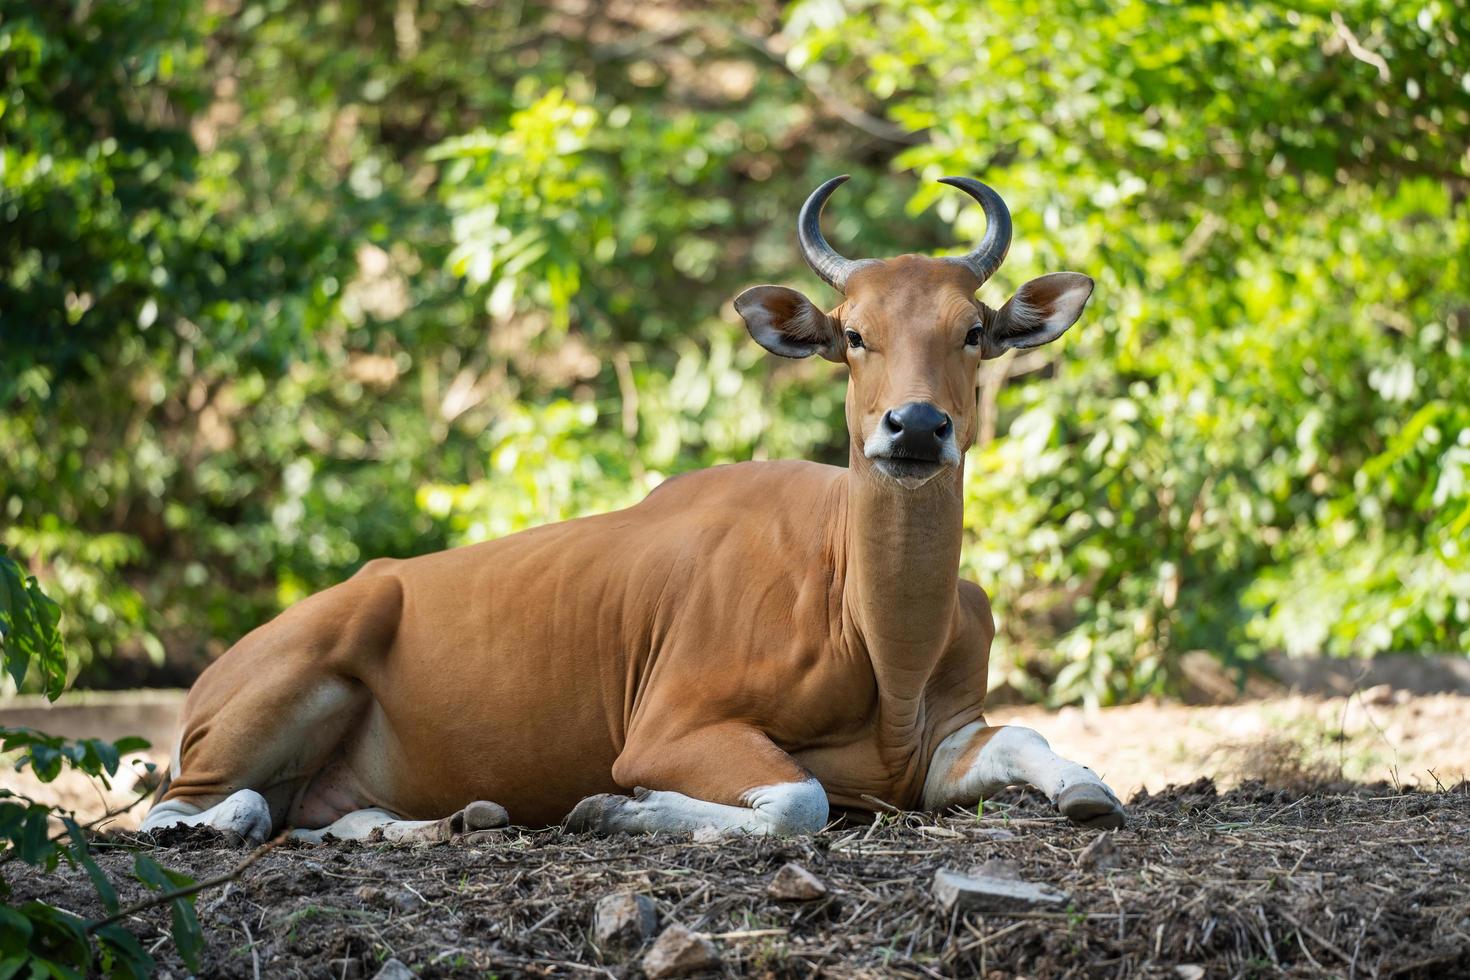 banteng, bos javanicus ou animal de vida selvagem de touro vermelho no sudeste da Ásia sentado na grama e olhando para camera.animal conservação e proteção do conceito de ecossistemas. foto